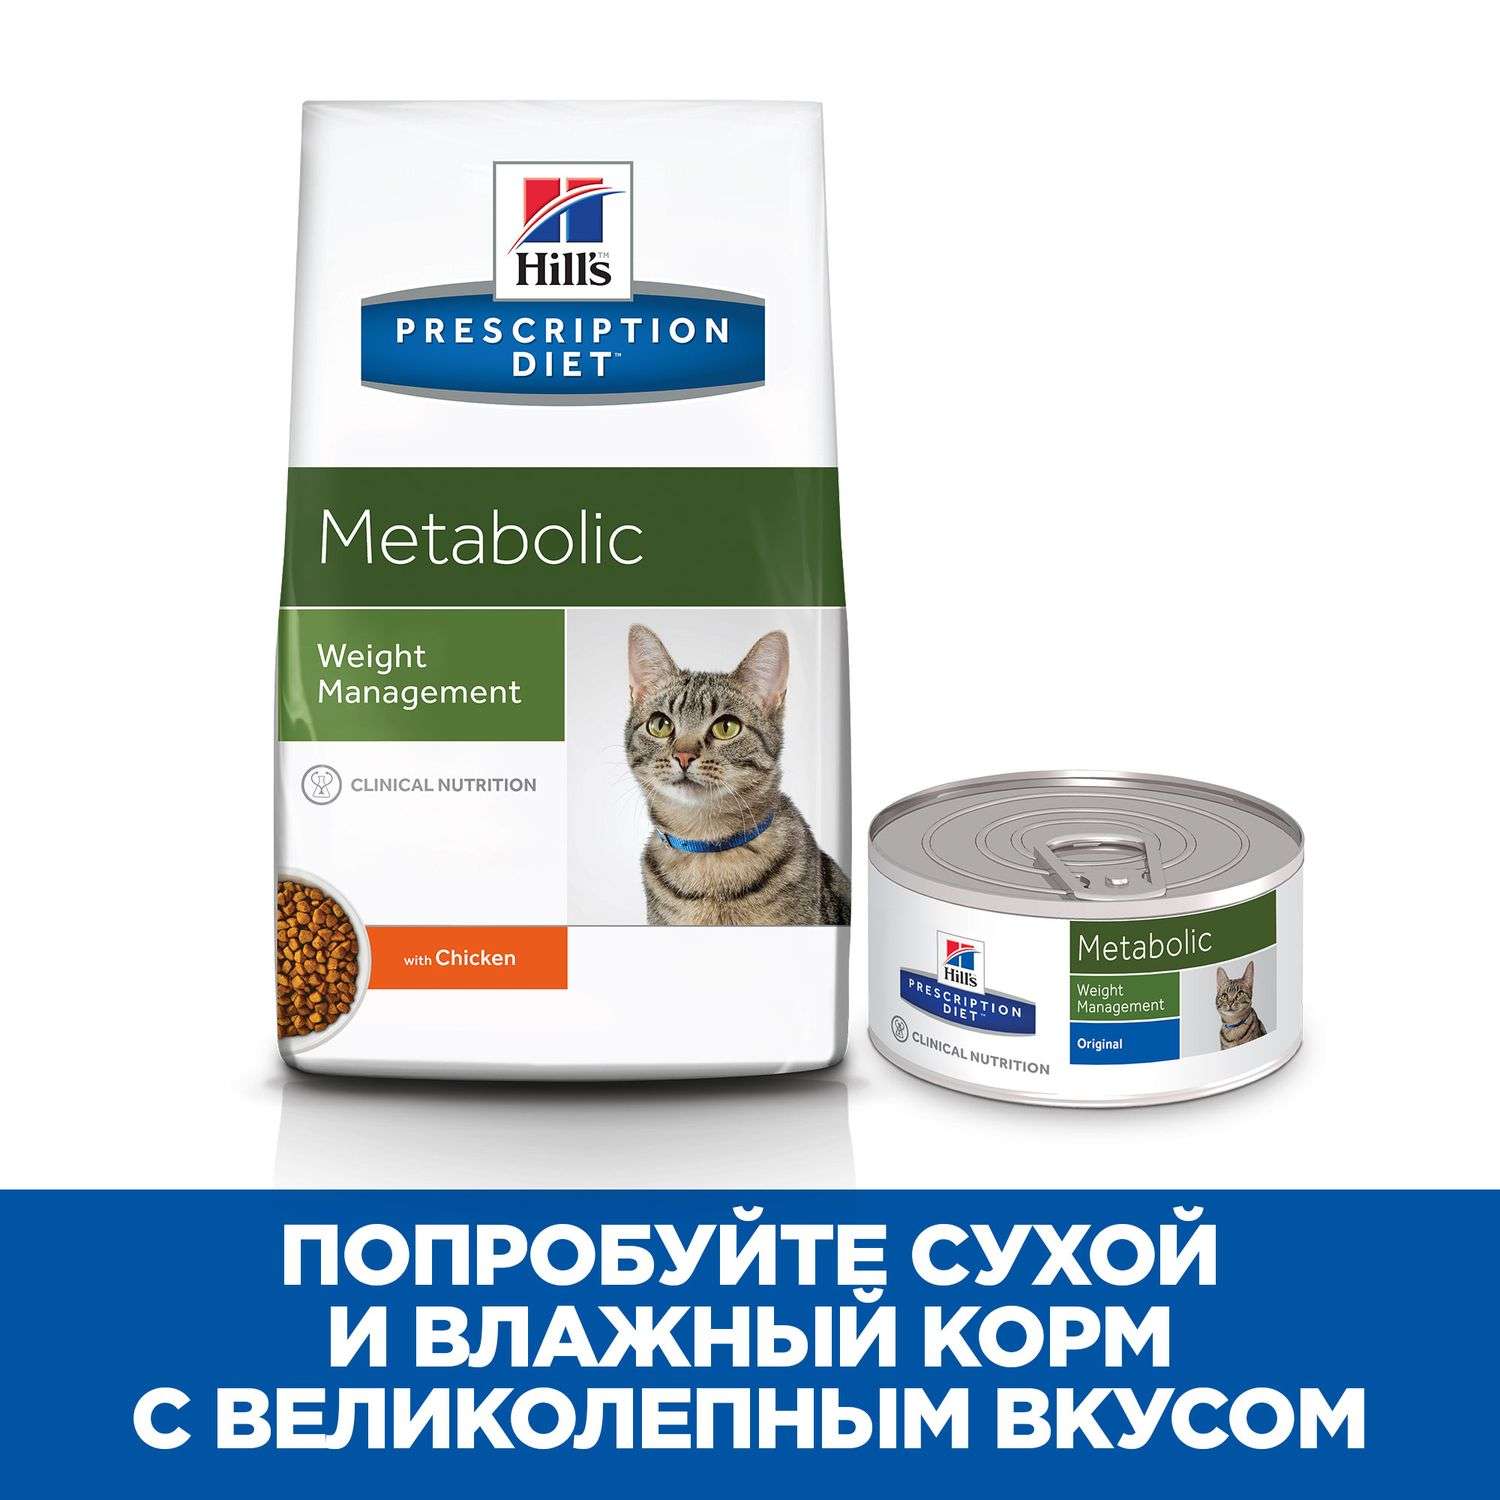 Корм для кошек HILLS 1,5кг Prescription Diet Metabolic Weight Management для оптимального веса с курицей сухой - фото 7